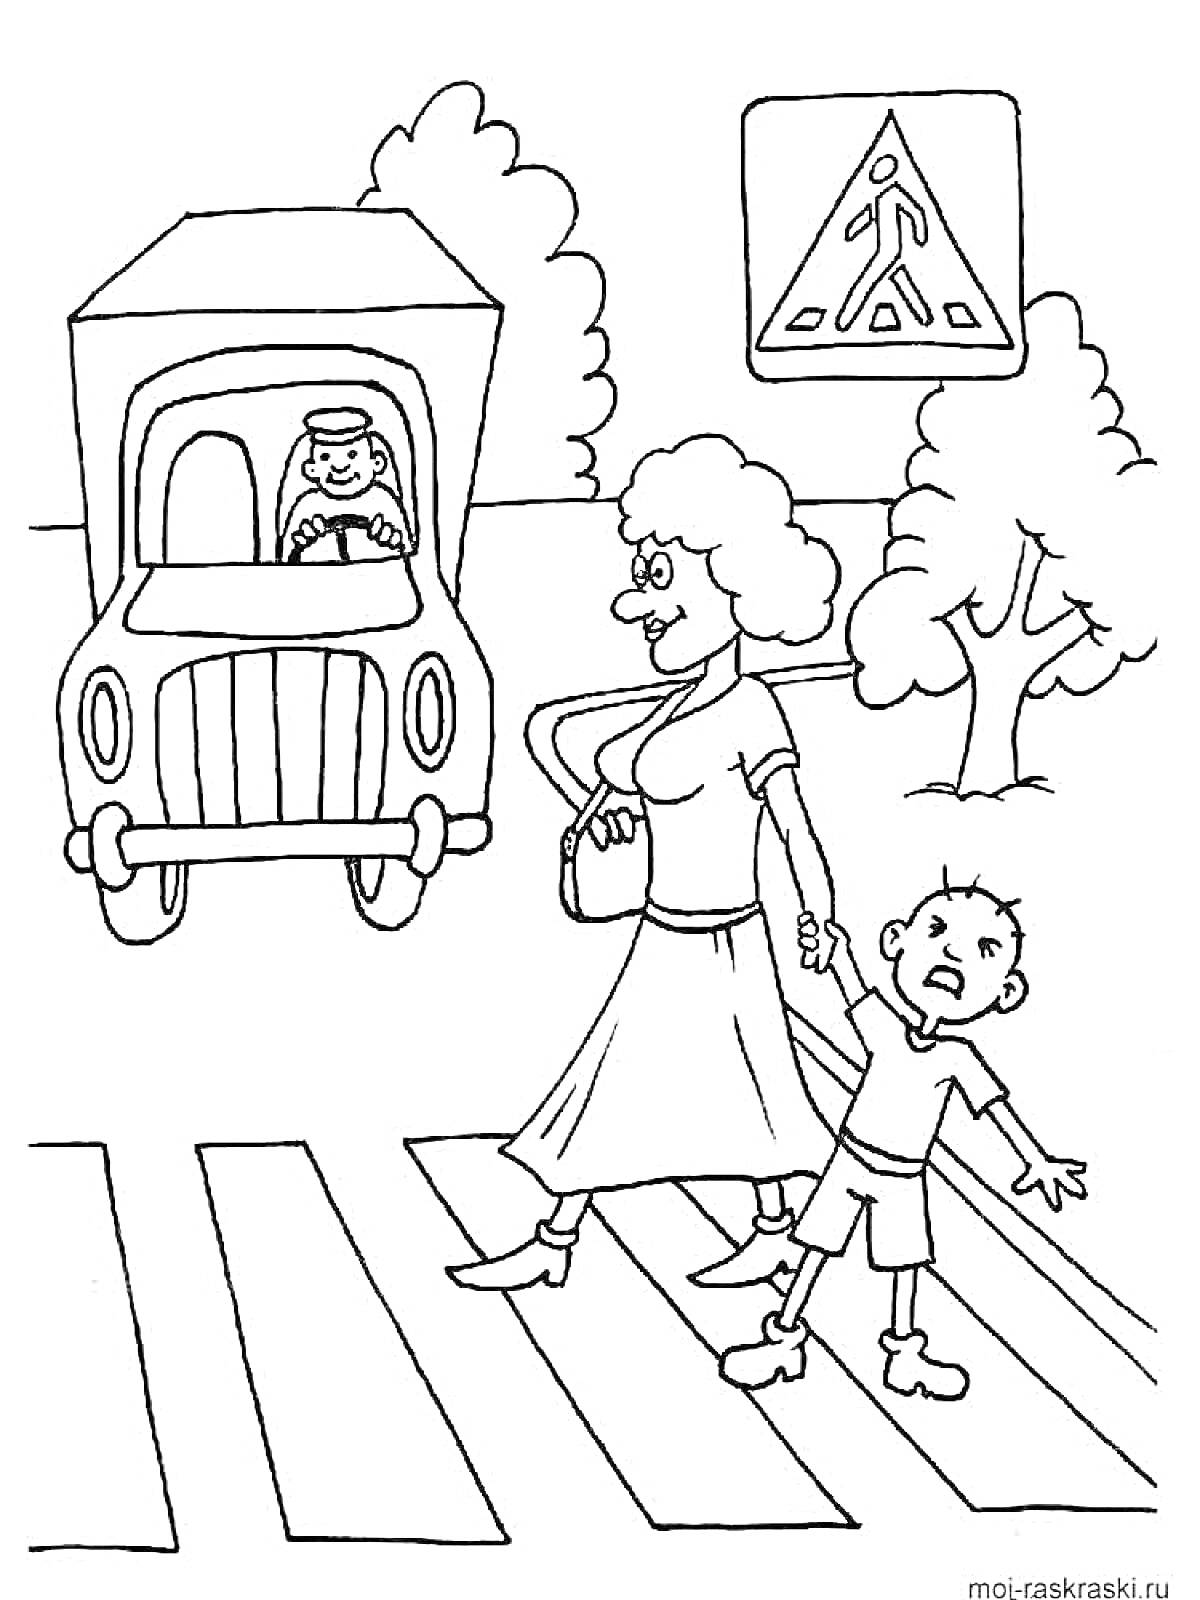 Пешеходный переход, грузовик, женщина за руку с ребёнком, дорожный знак 